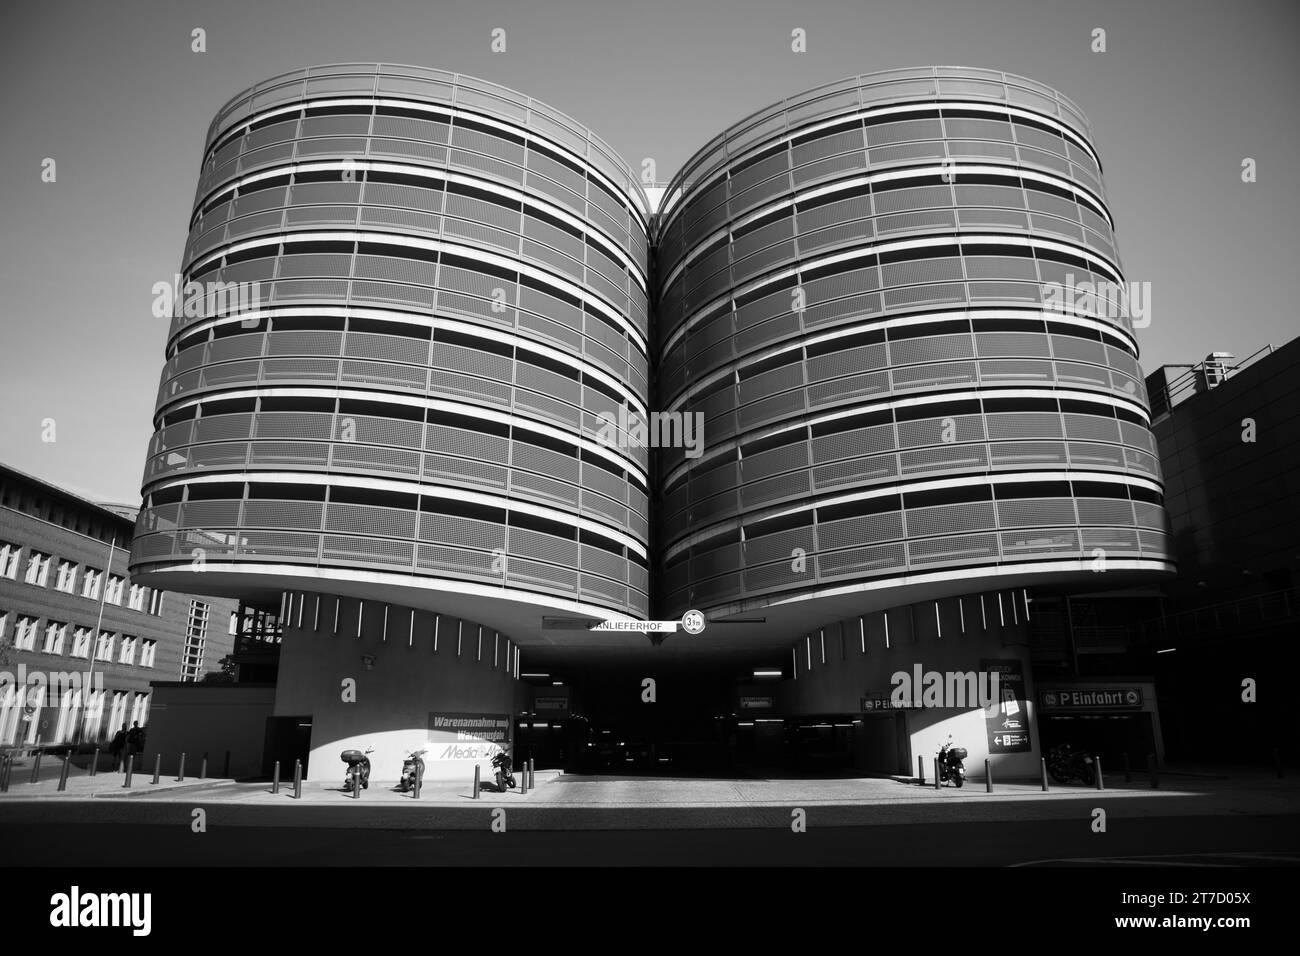 Una foto in scala di grigi di un grande edificio moderno con due alte torri a Berlino, in Germania. Foto Stock